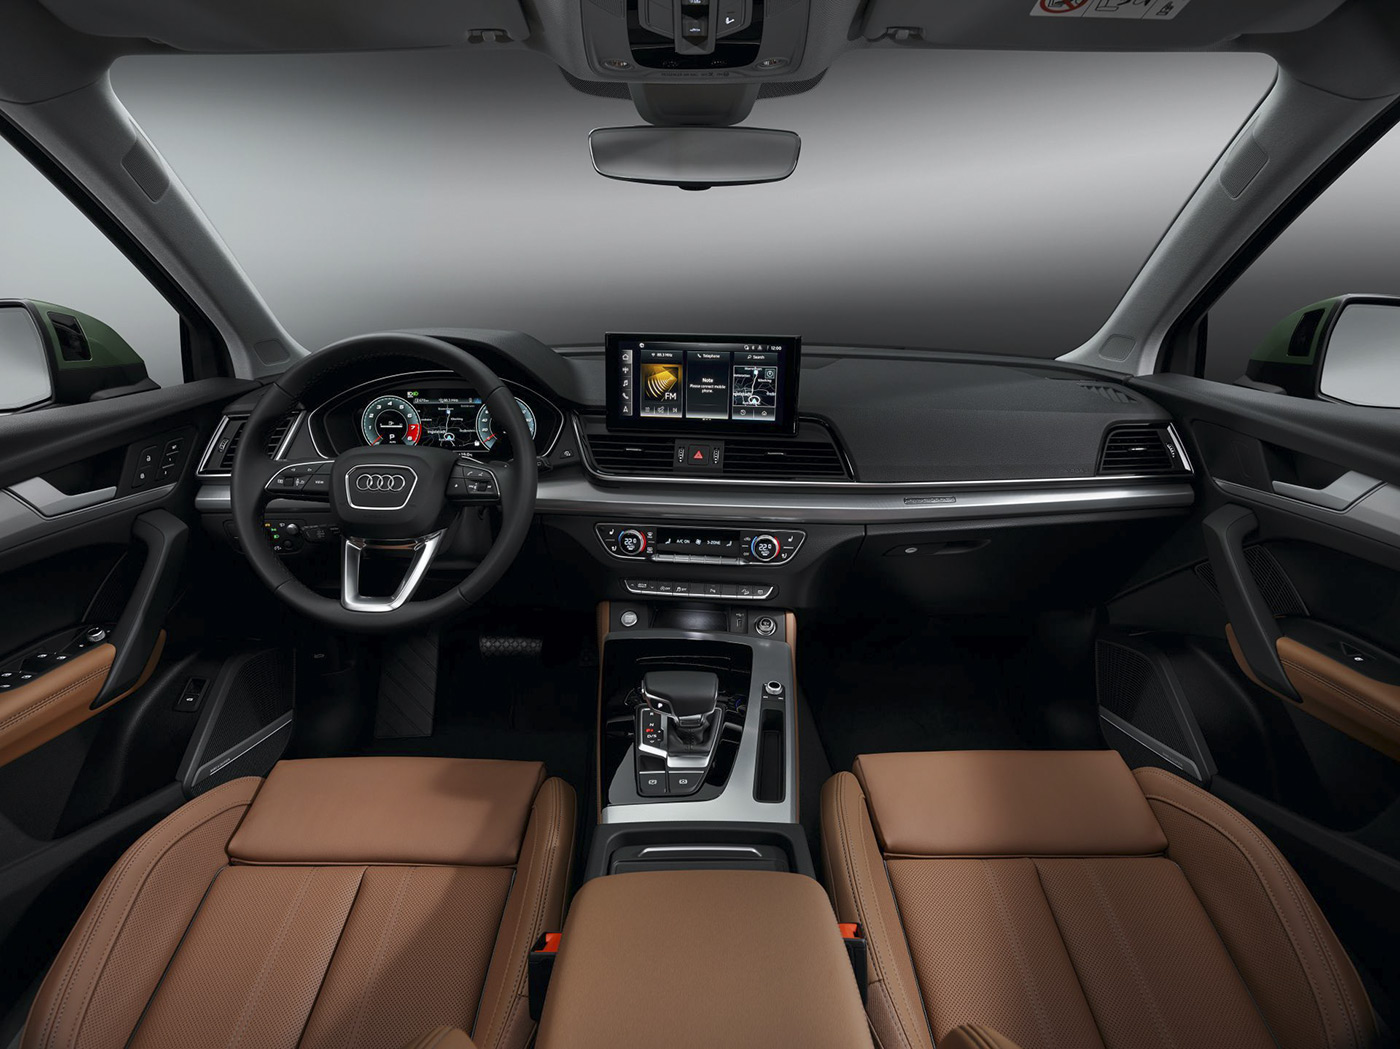  Audi Q5.     